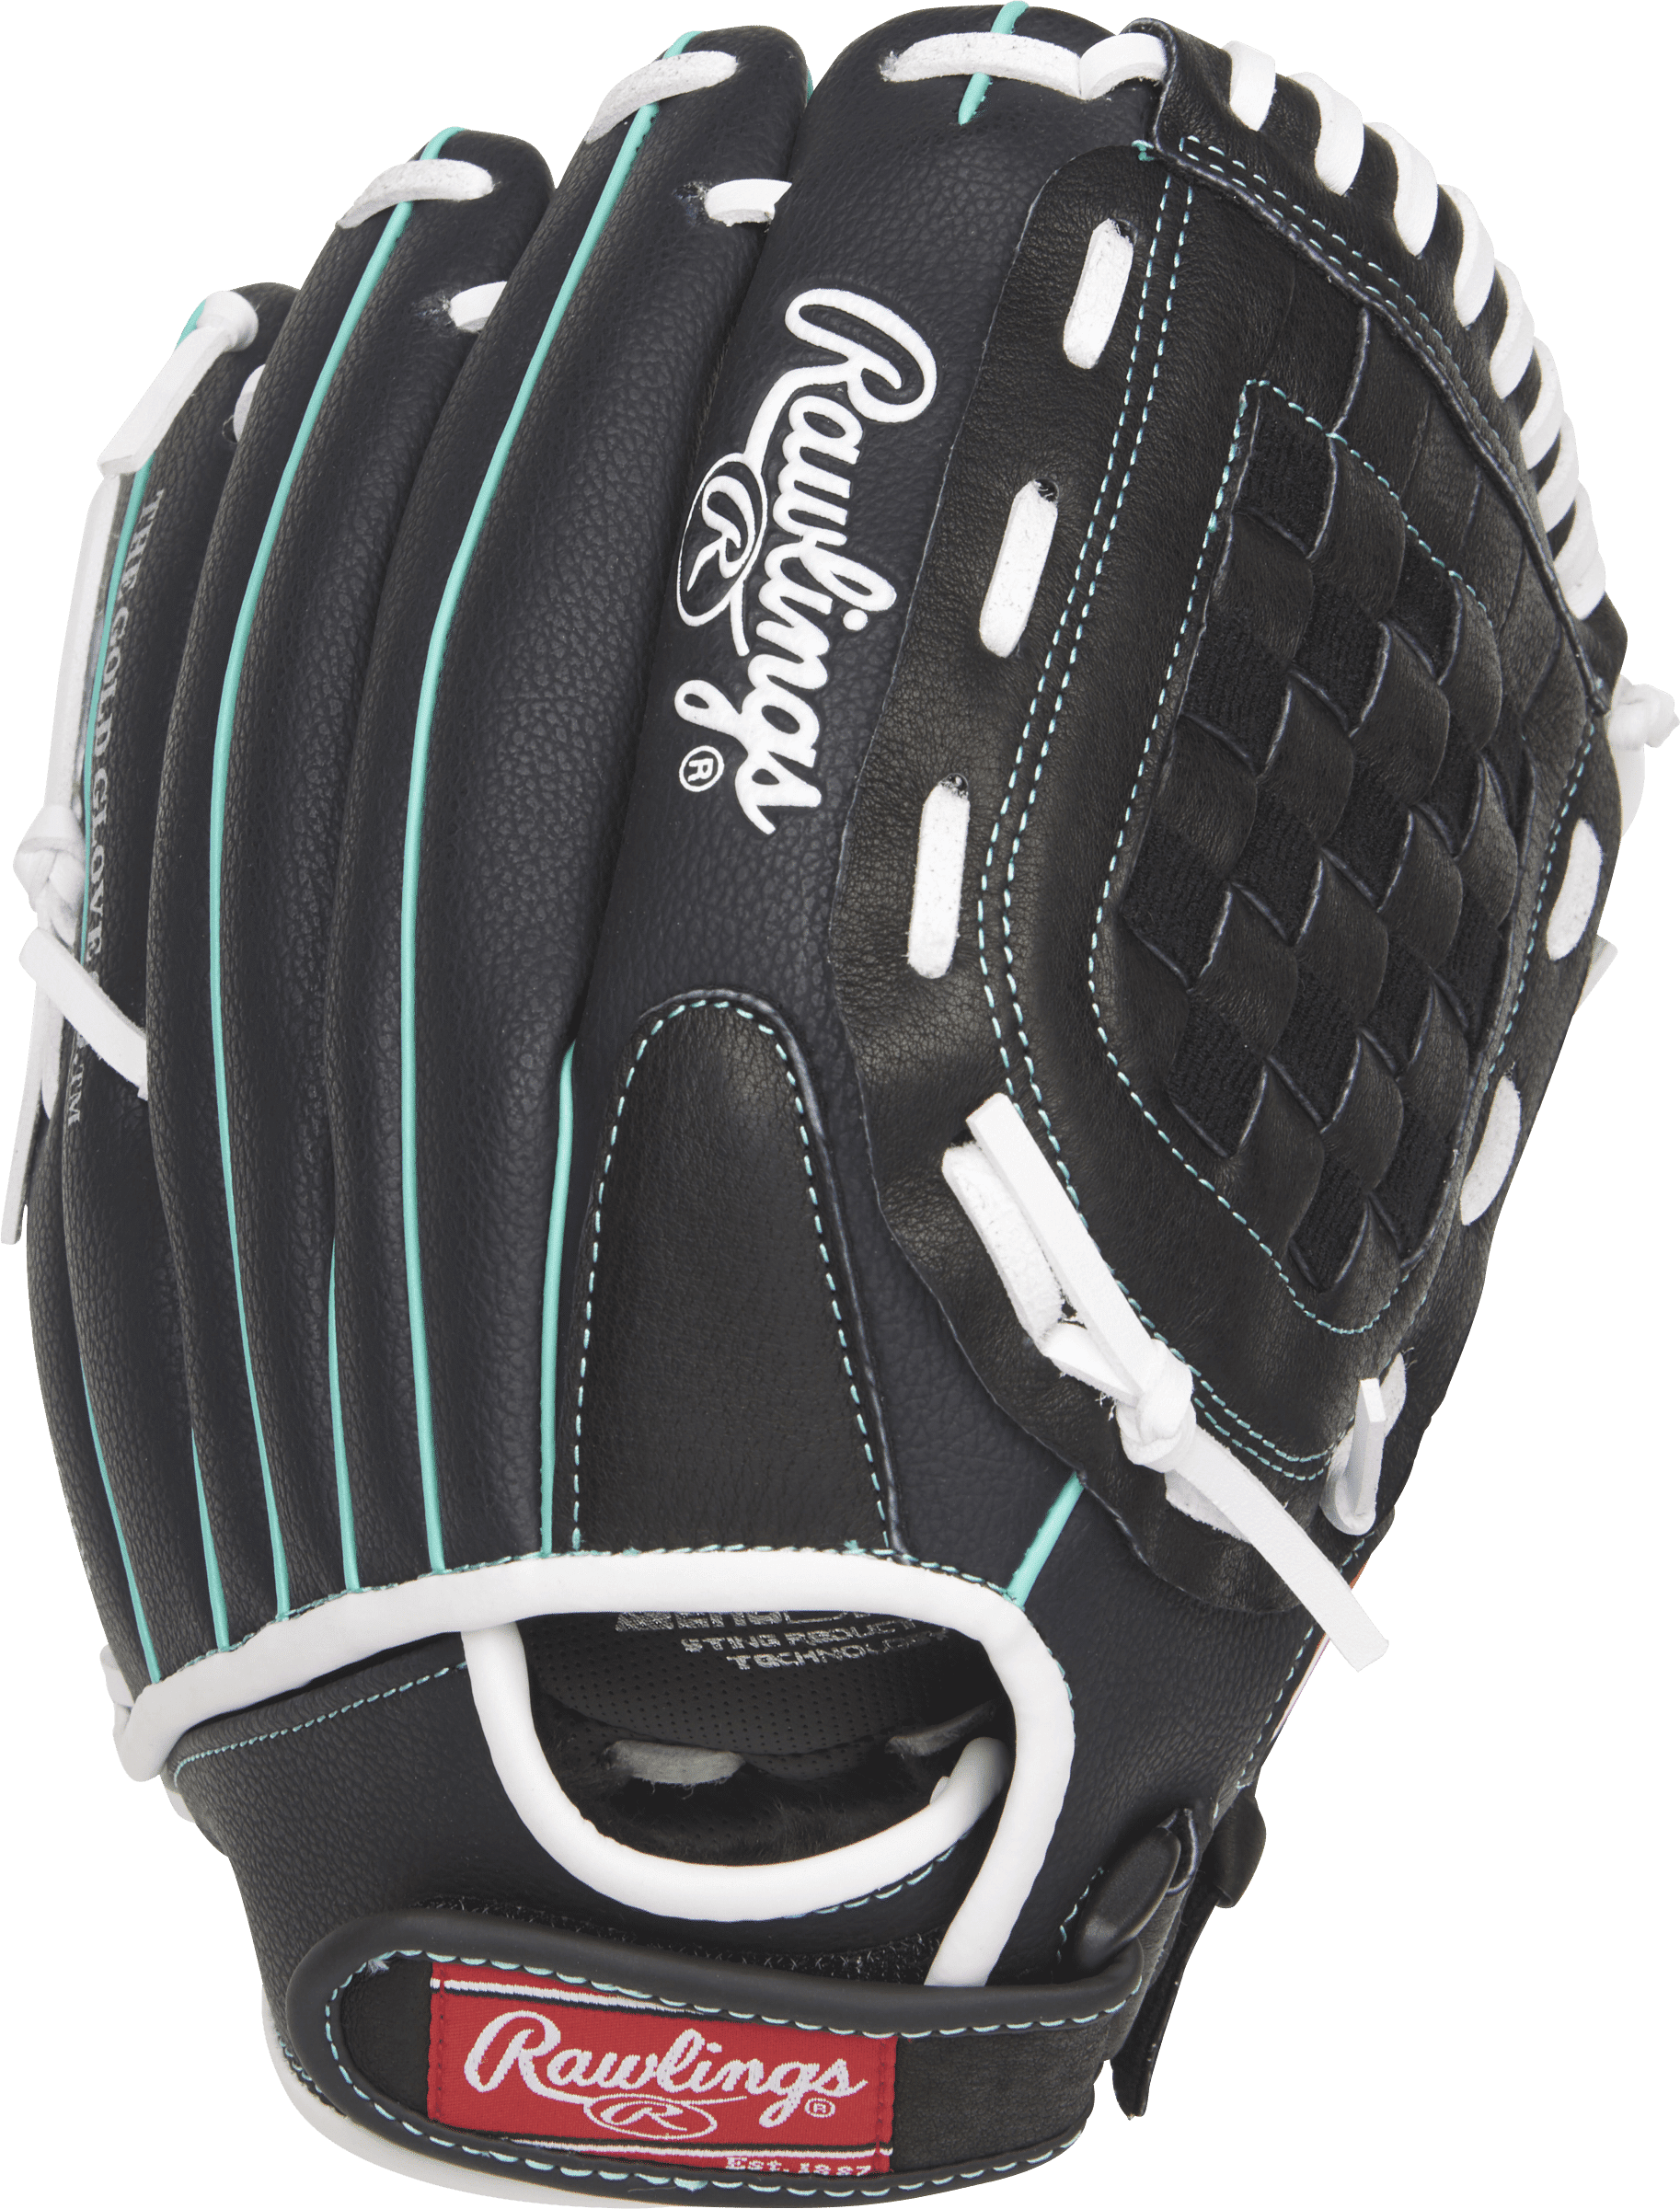 Rawlings Fastpitch Girls Softball Glove RHT Leather Palm 11.5" Pink Baseball 